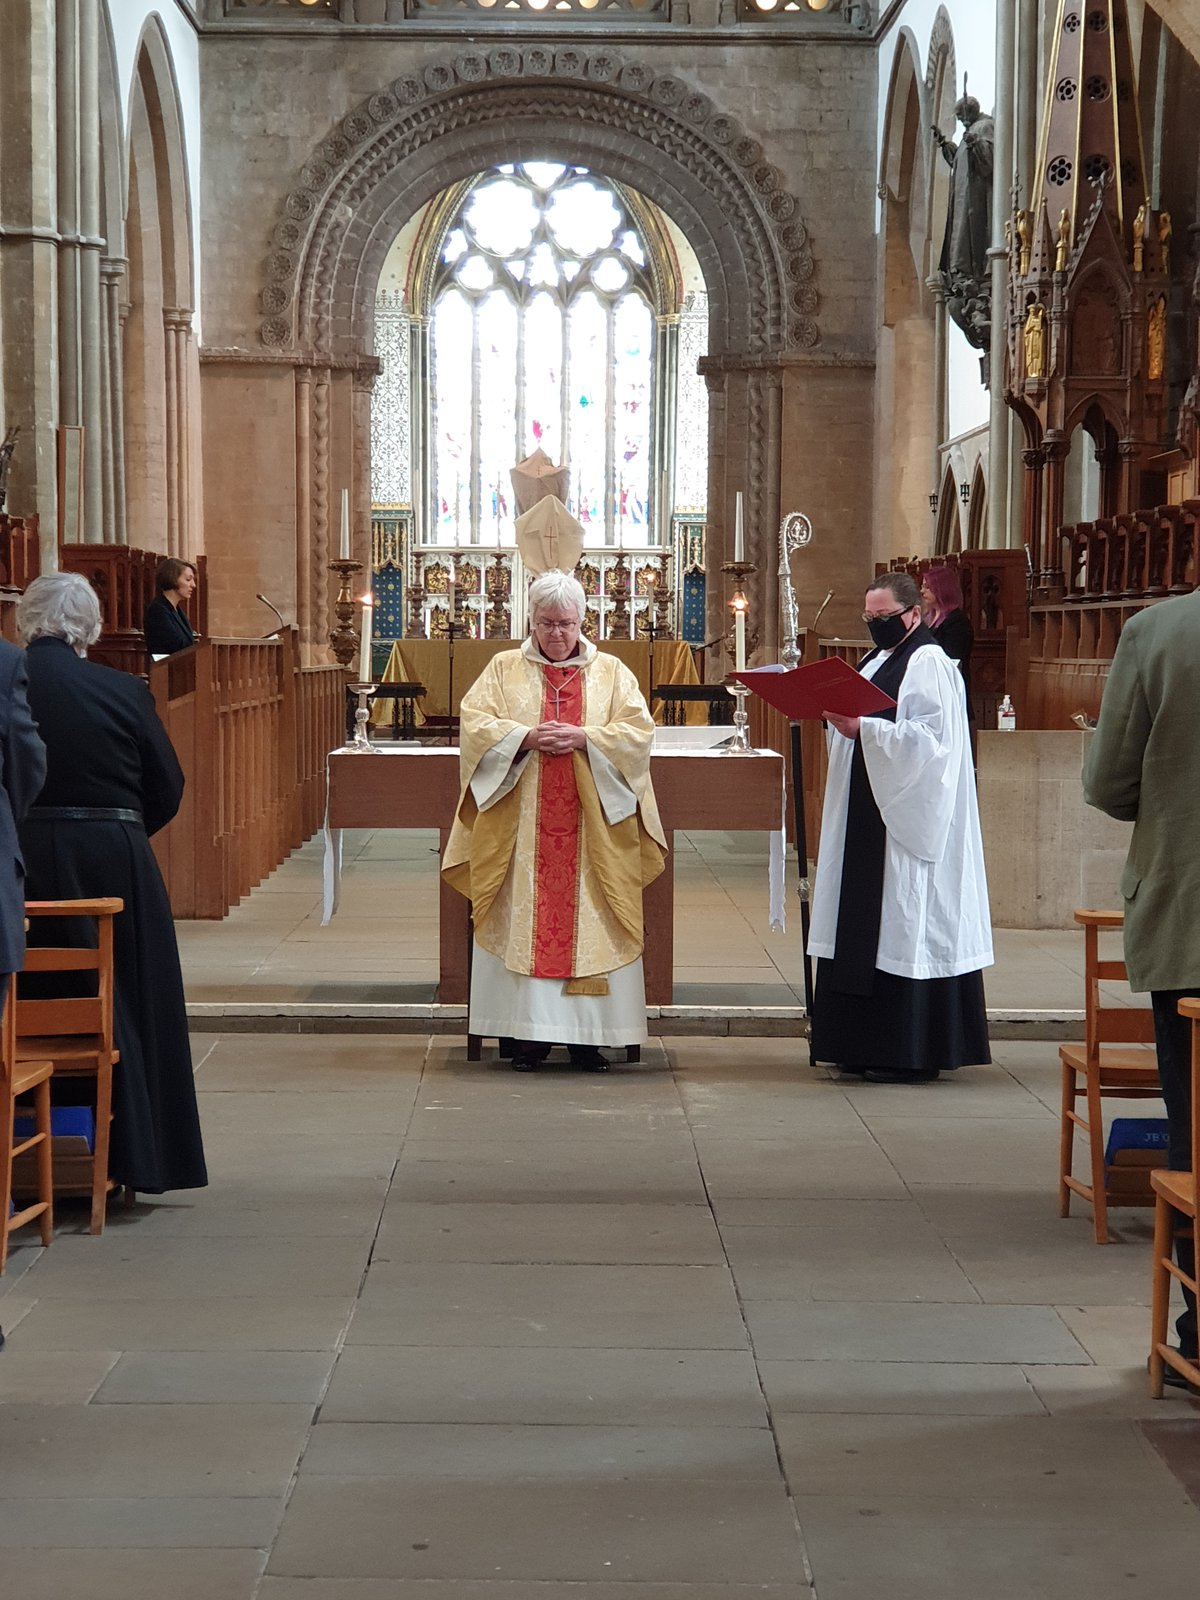 Bishop June delivering a service at the altar of Llandaff Cathedral